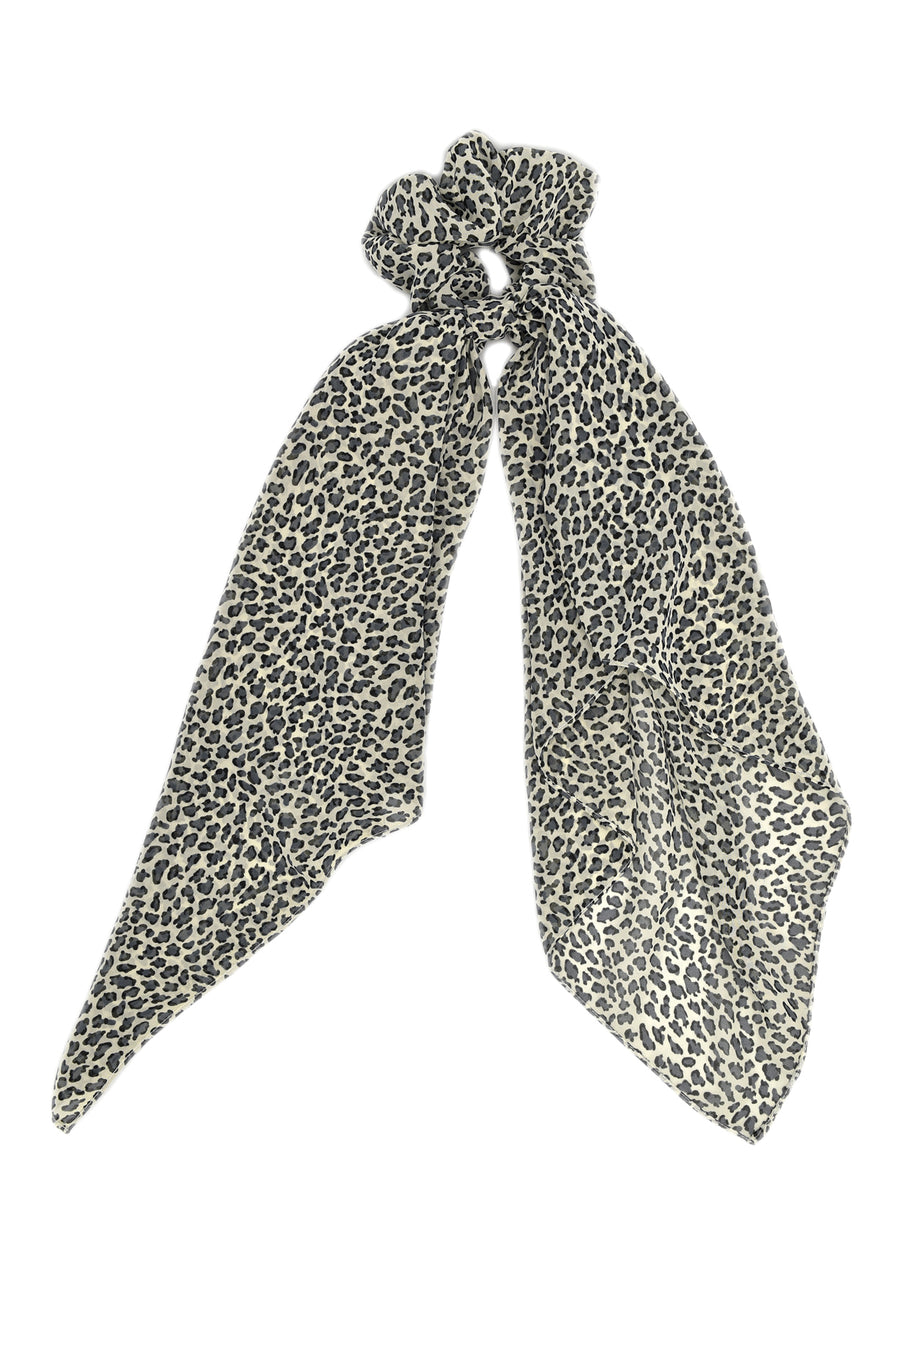 Dark grey cheetahprint scrunchie scarf